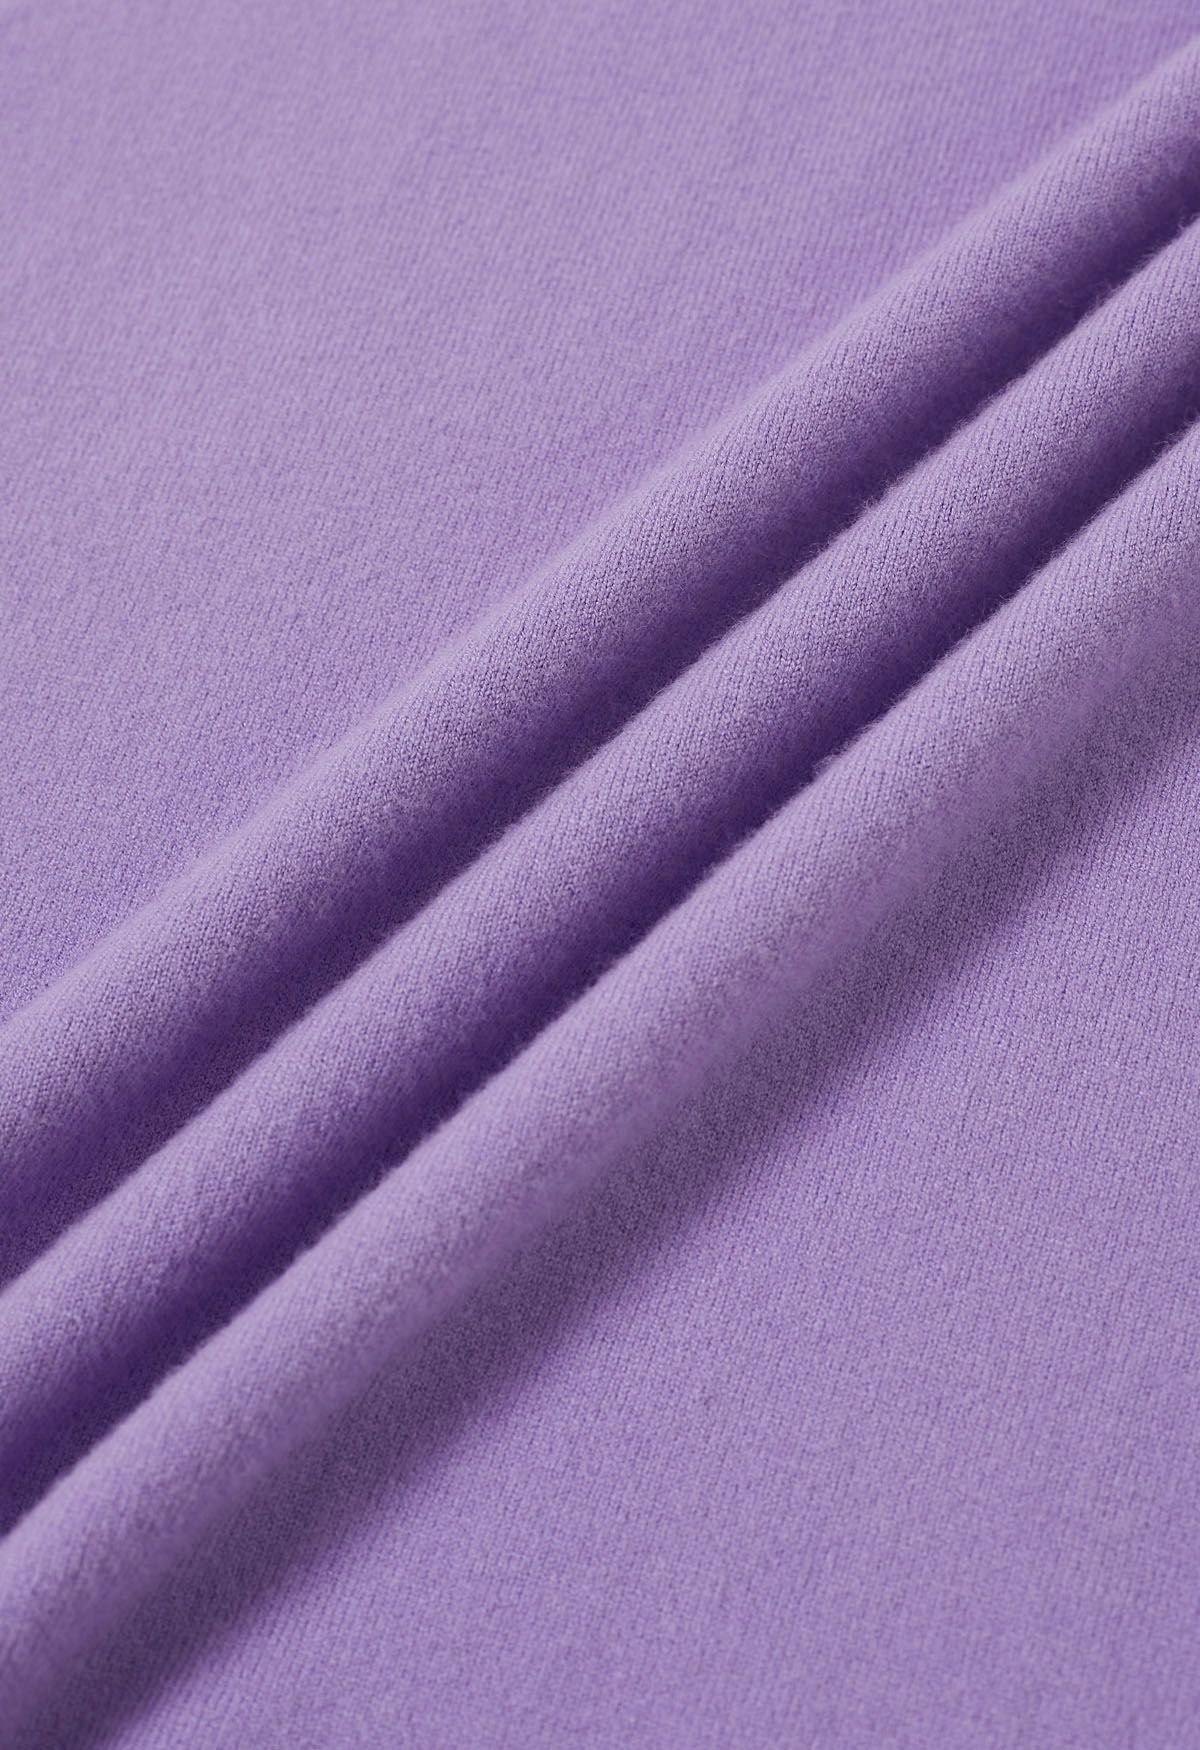 Haut en tricot à manches courtes de couleur unie en lilas